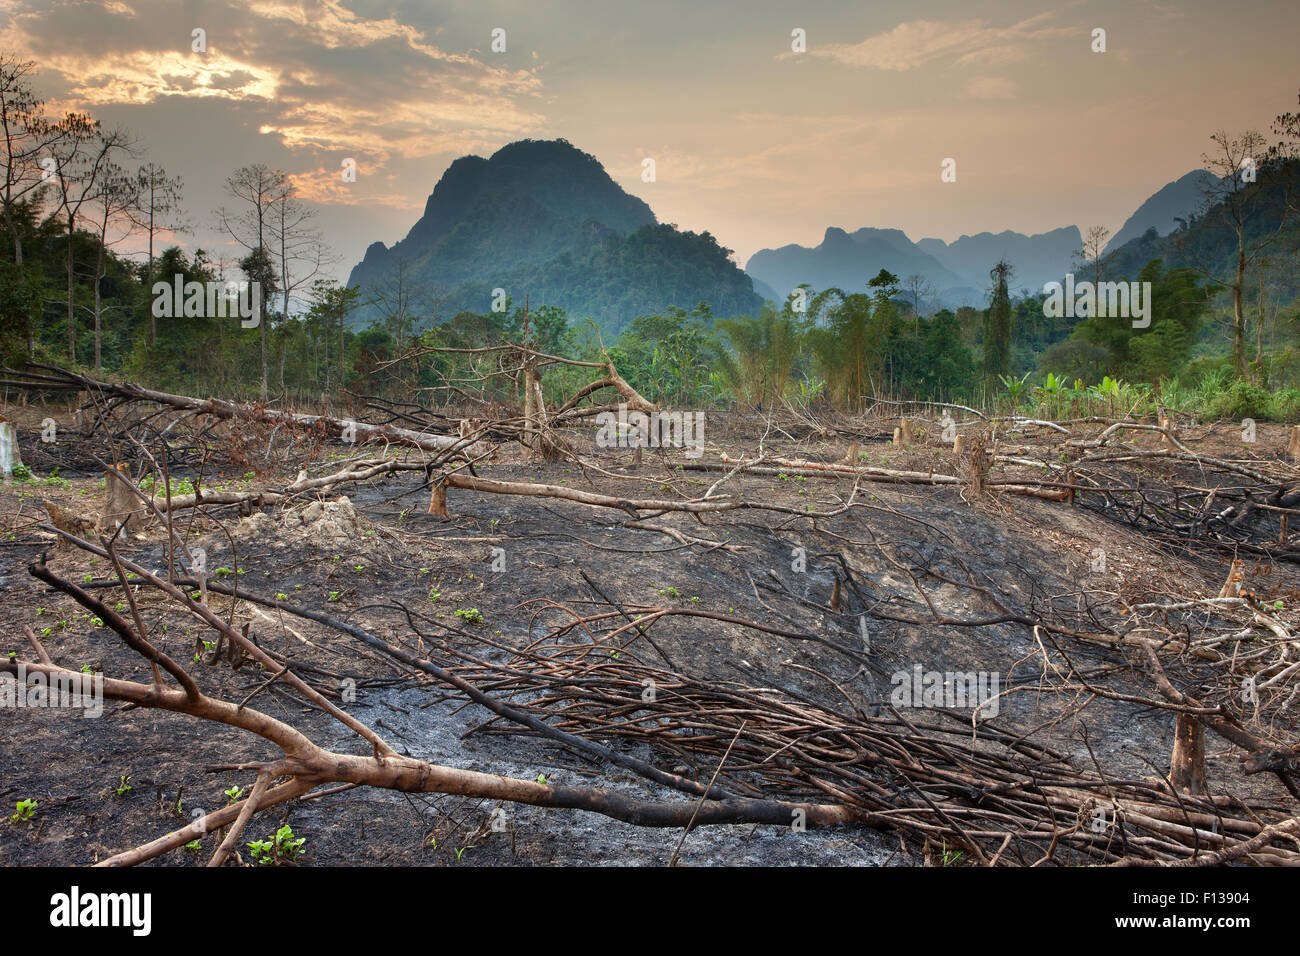 Slash and burn deforestation near Vang Vieng, Laos, March 2009. Stock Photo